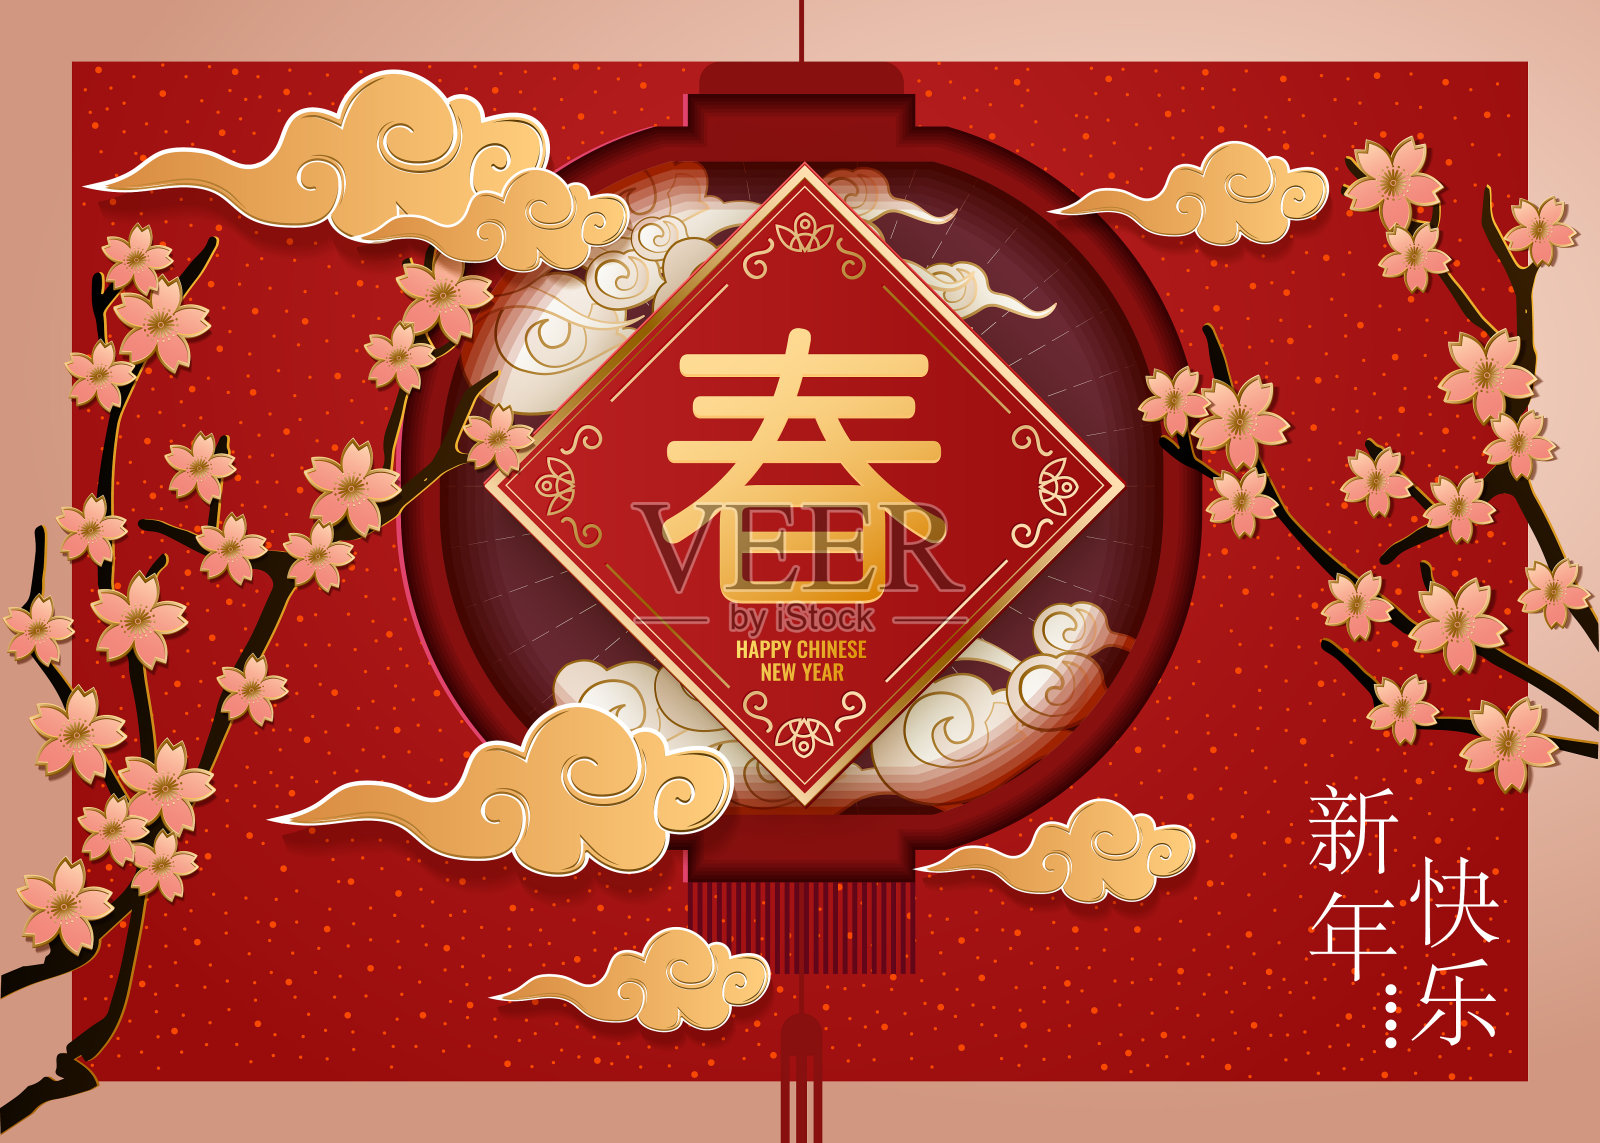 经典的中国新年背景设计模板素材